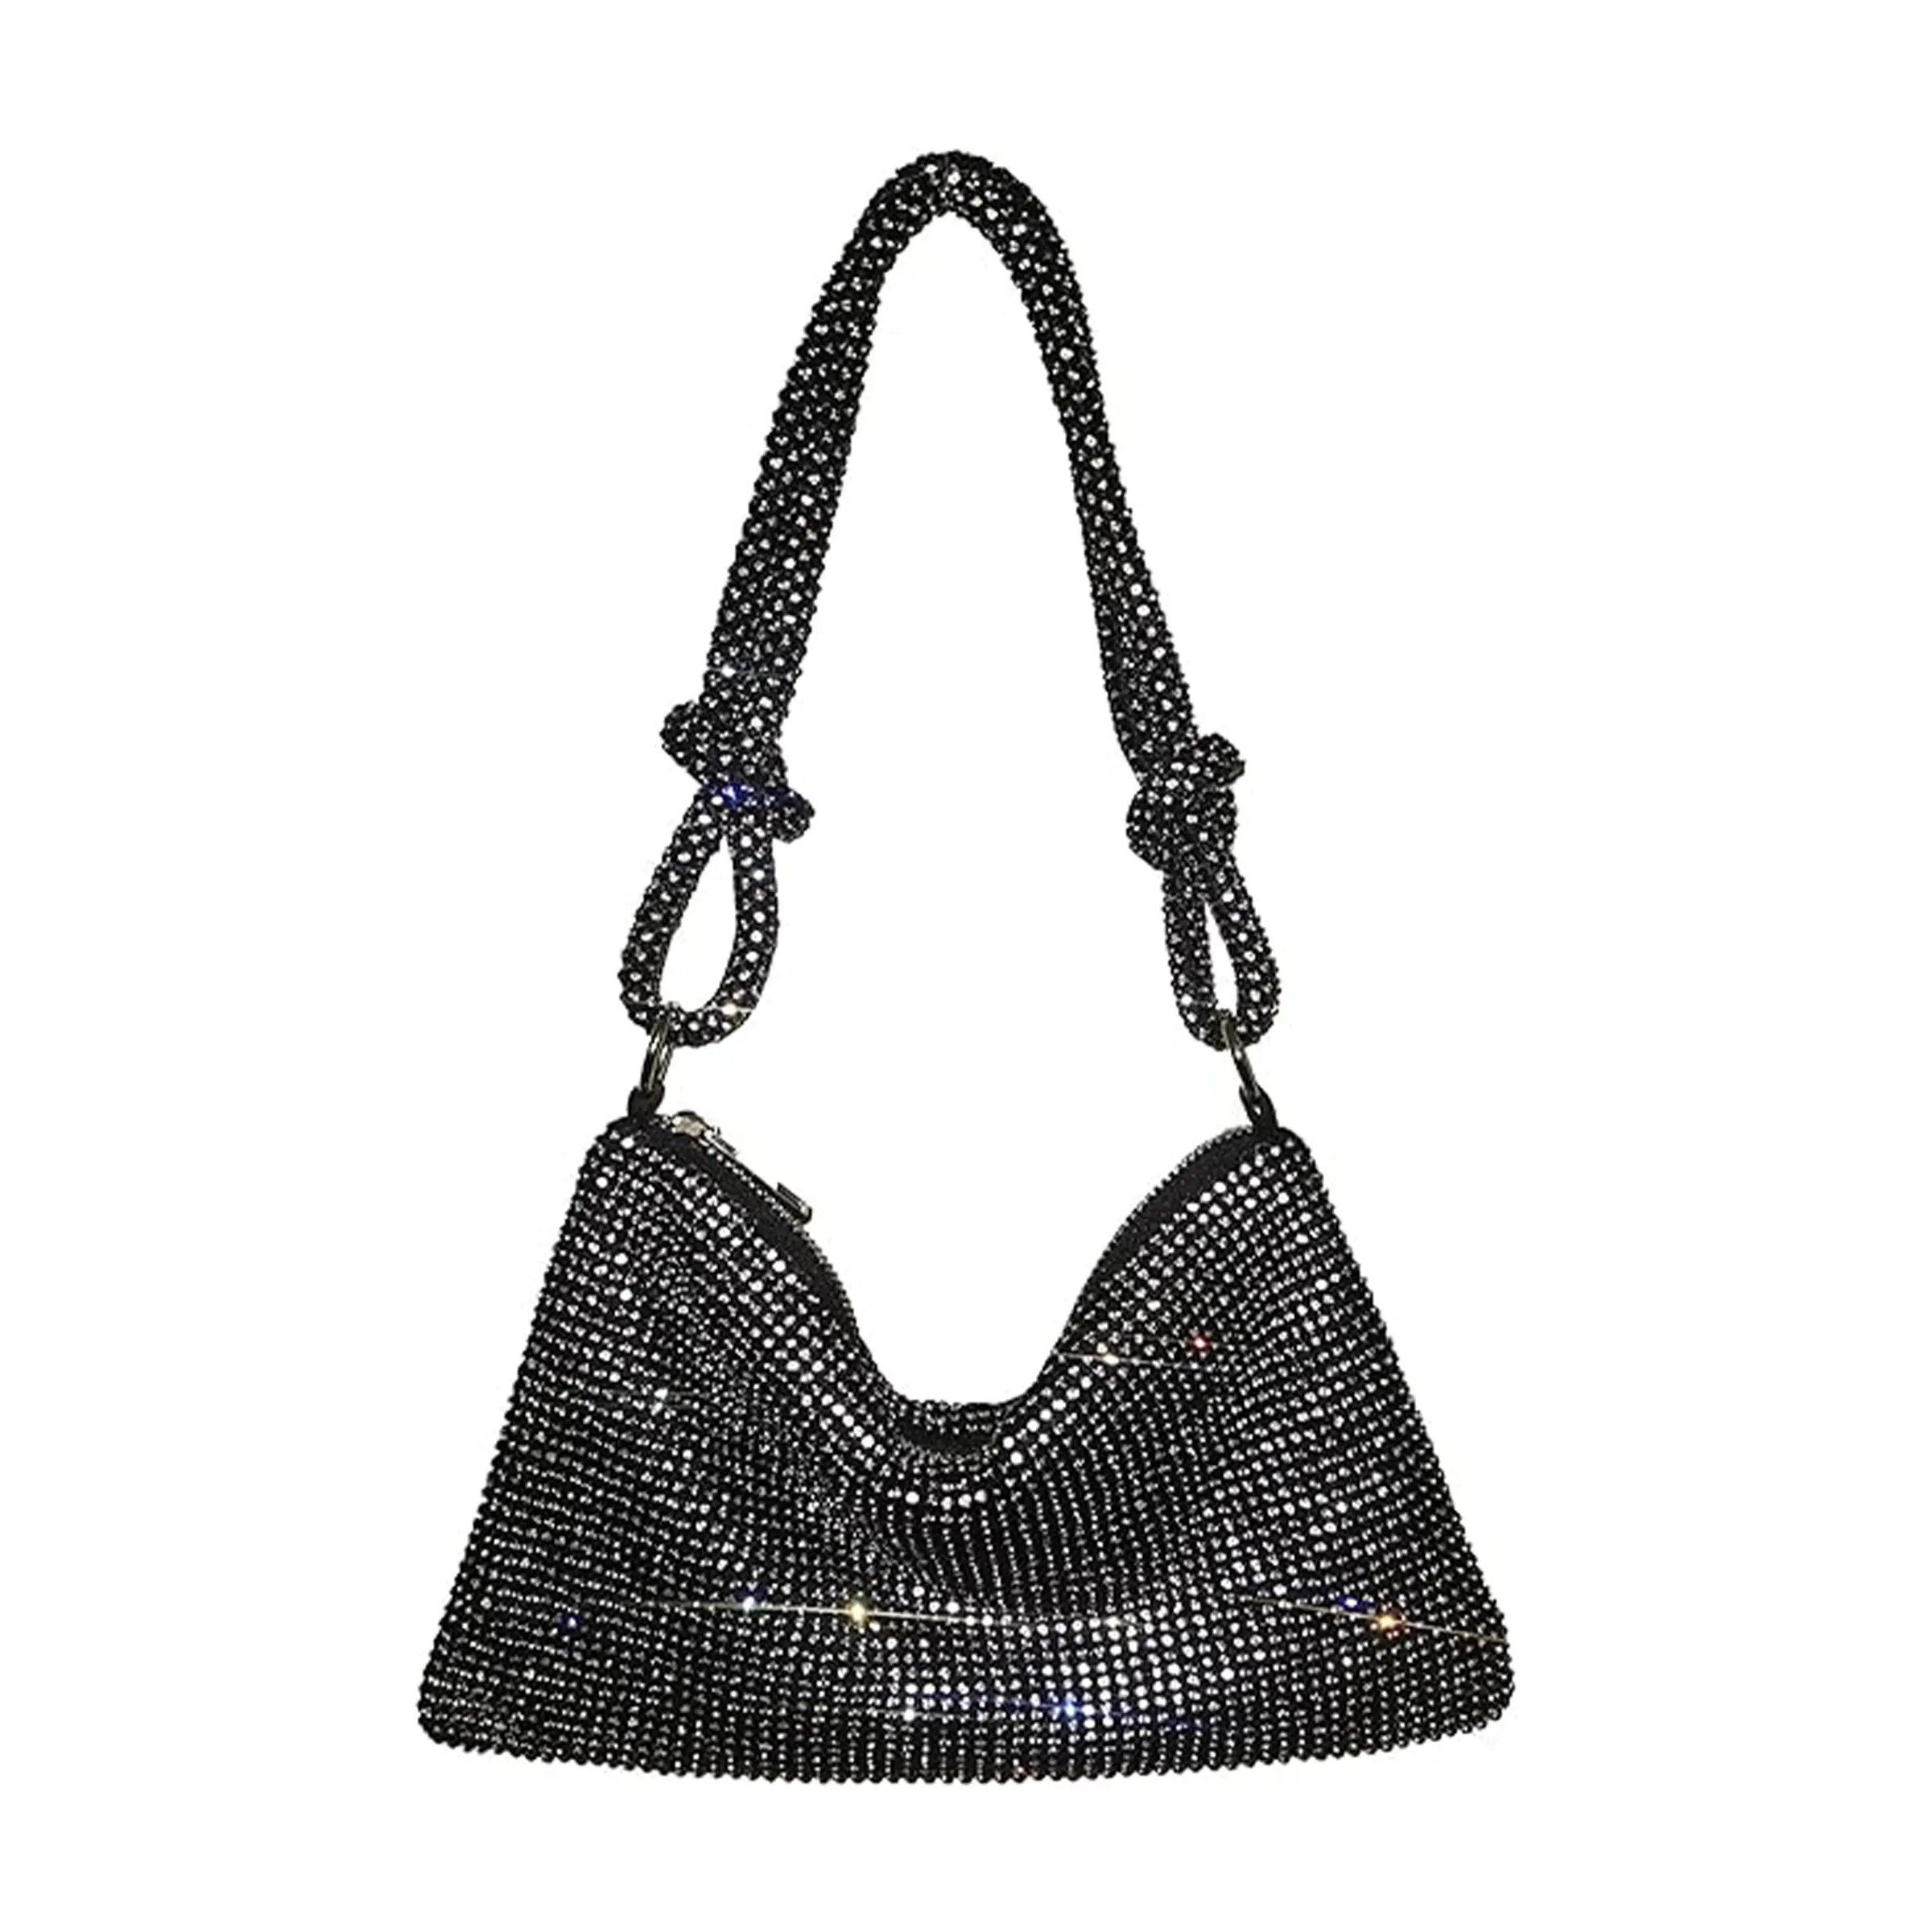 Moda lüks tasarımcı elmas tam elmas akşam çanta gelgit flaş düğümlü taklidi saf el yapımı koltukaltı ziyafet yemeği çantası